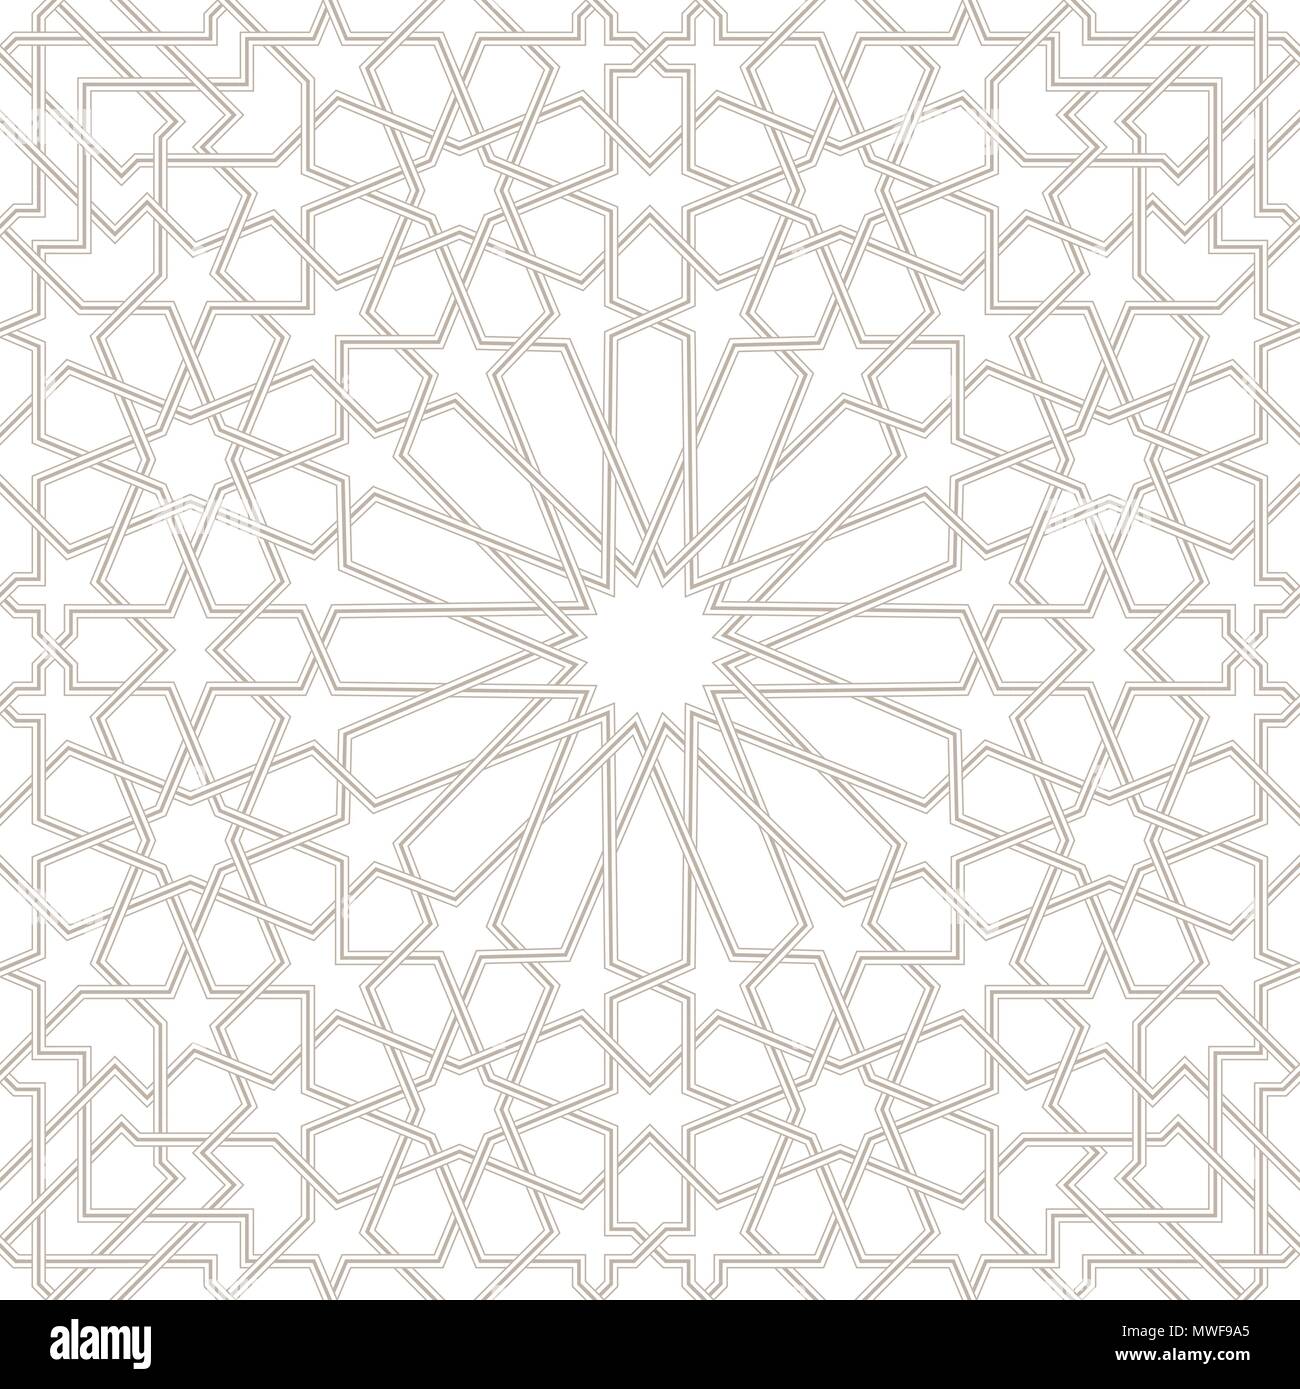 Il Marocco Seamless grigio chiaro Pattern, arabo tradizionale carta da parati islamica, patrimonio geometrico design, illustrazione vettoriale Illustrazione Vettoriale